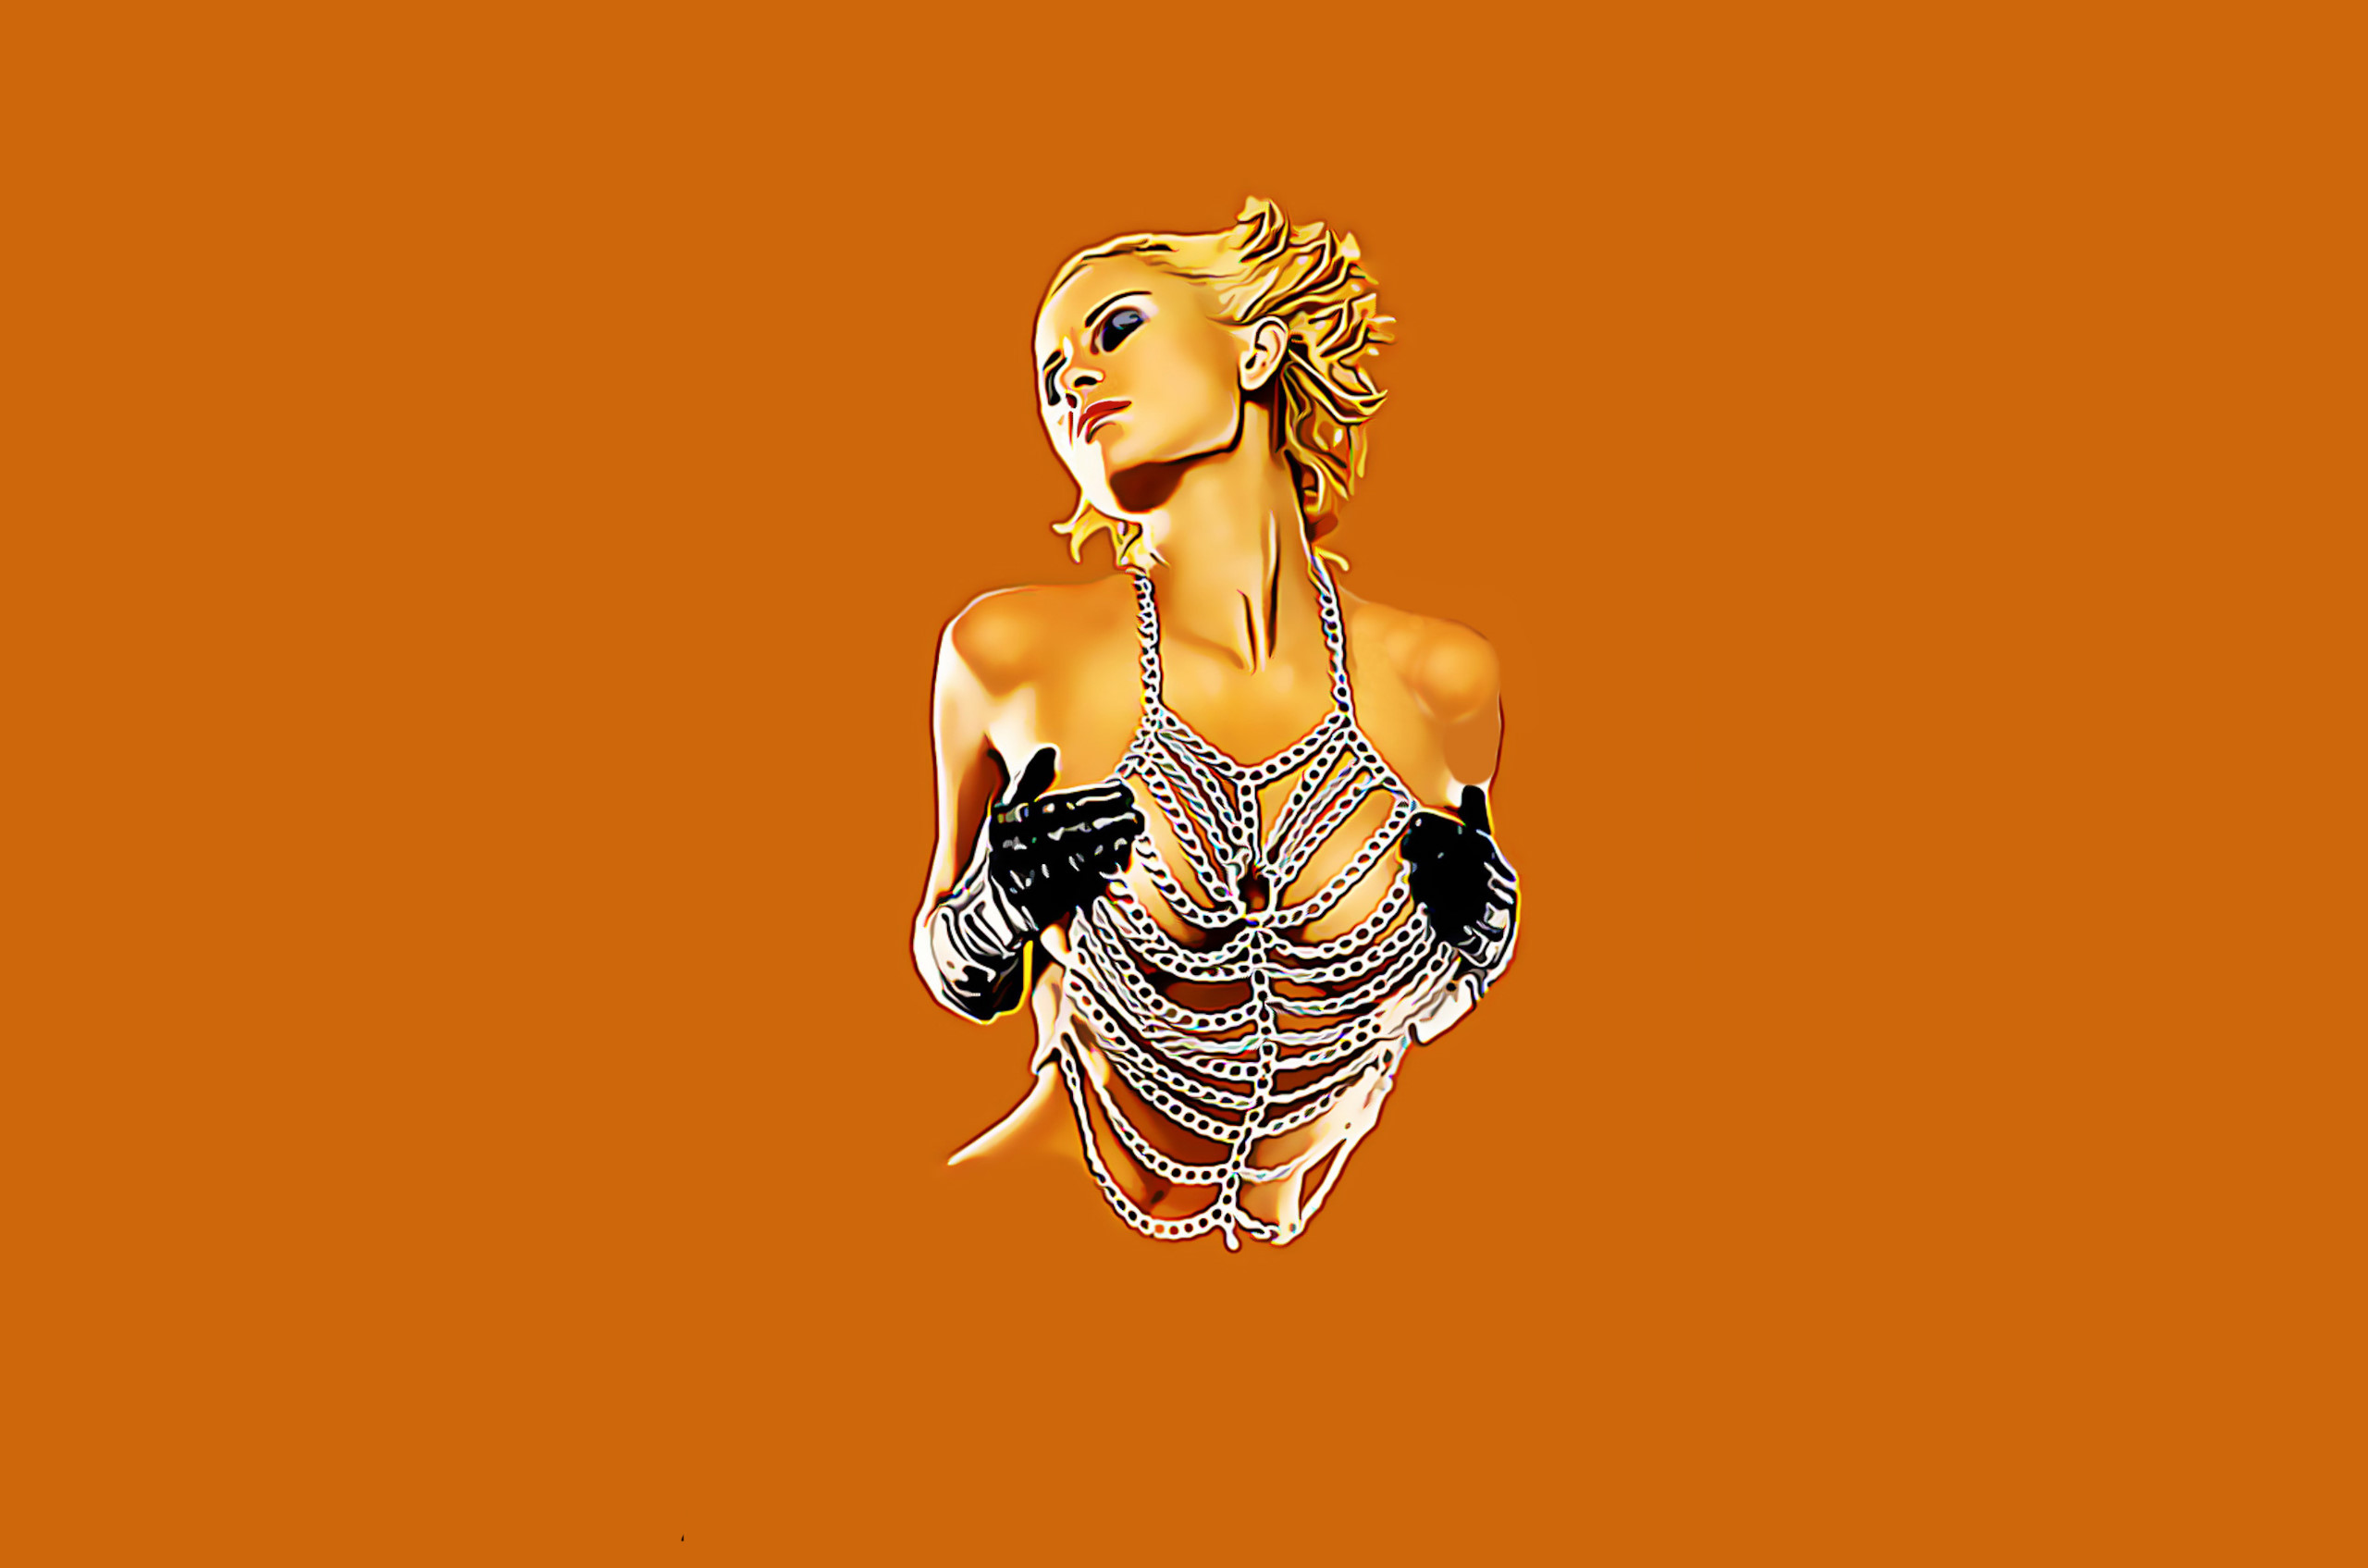 General 2560x1695 women artwork boobs orange background simple background blonde